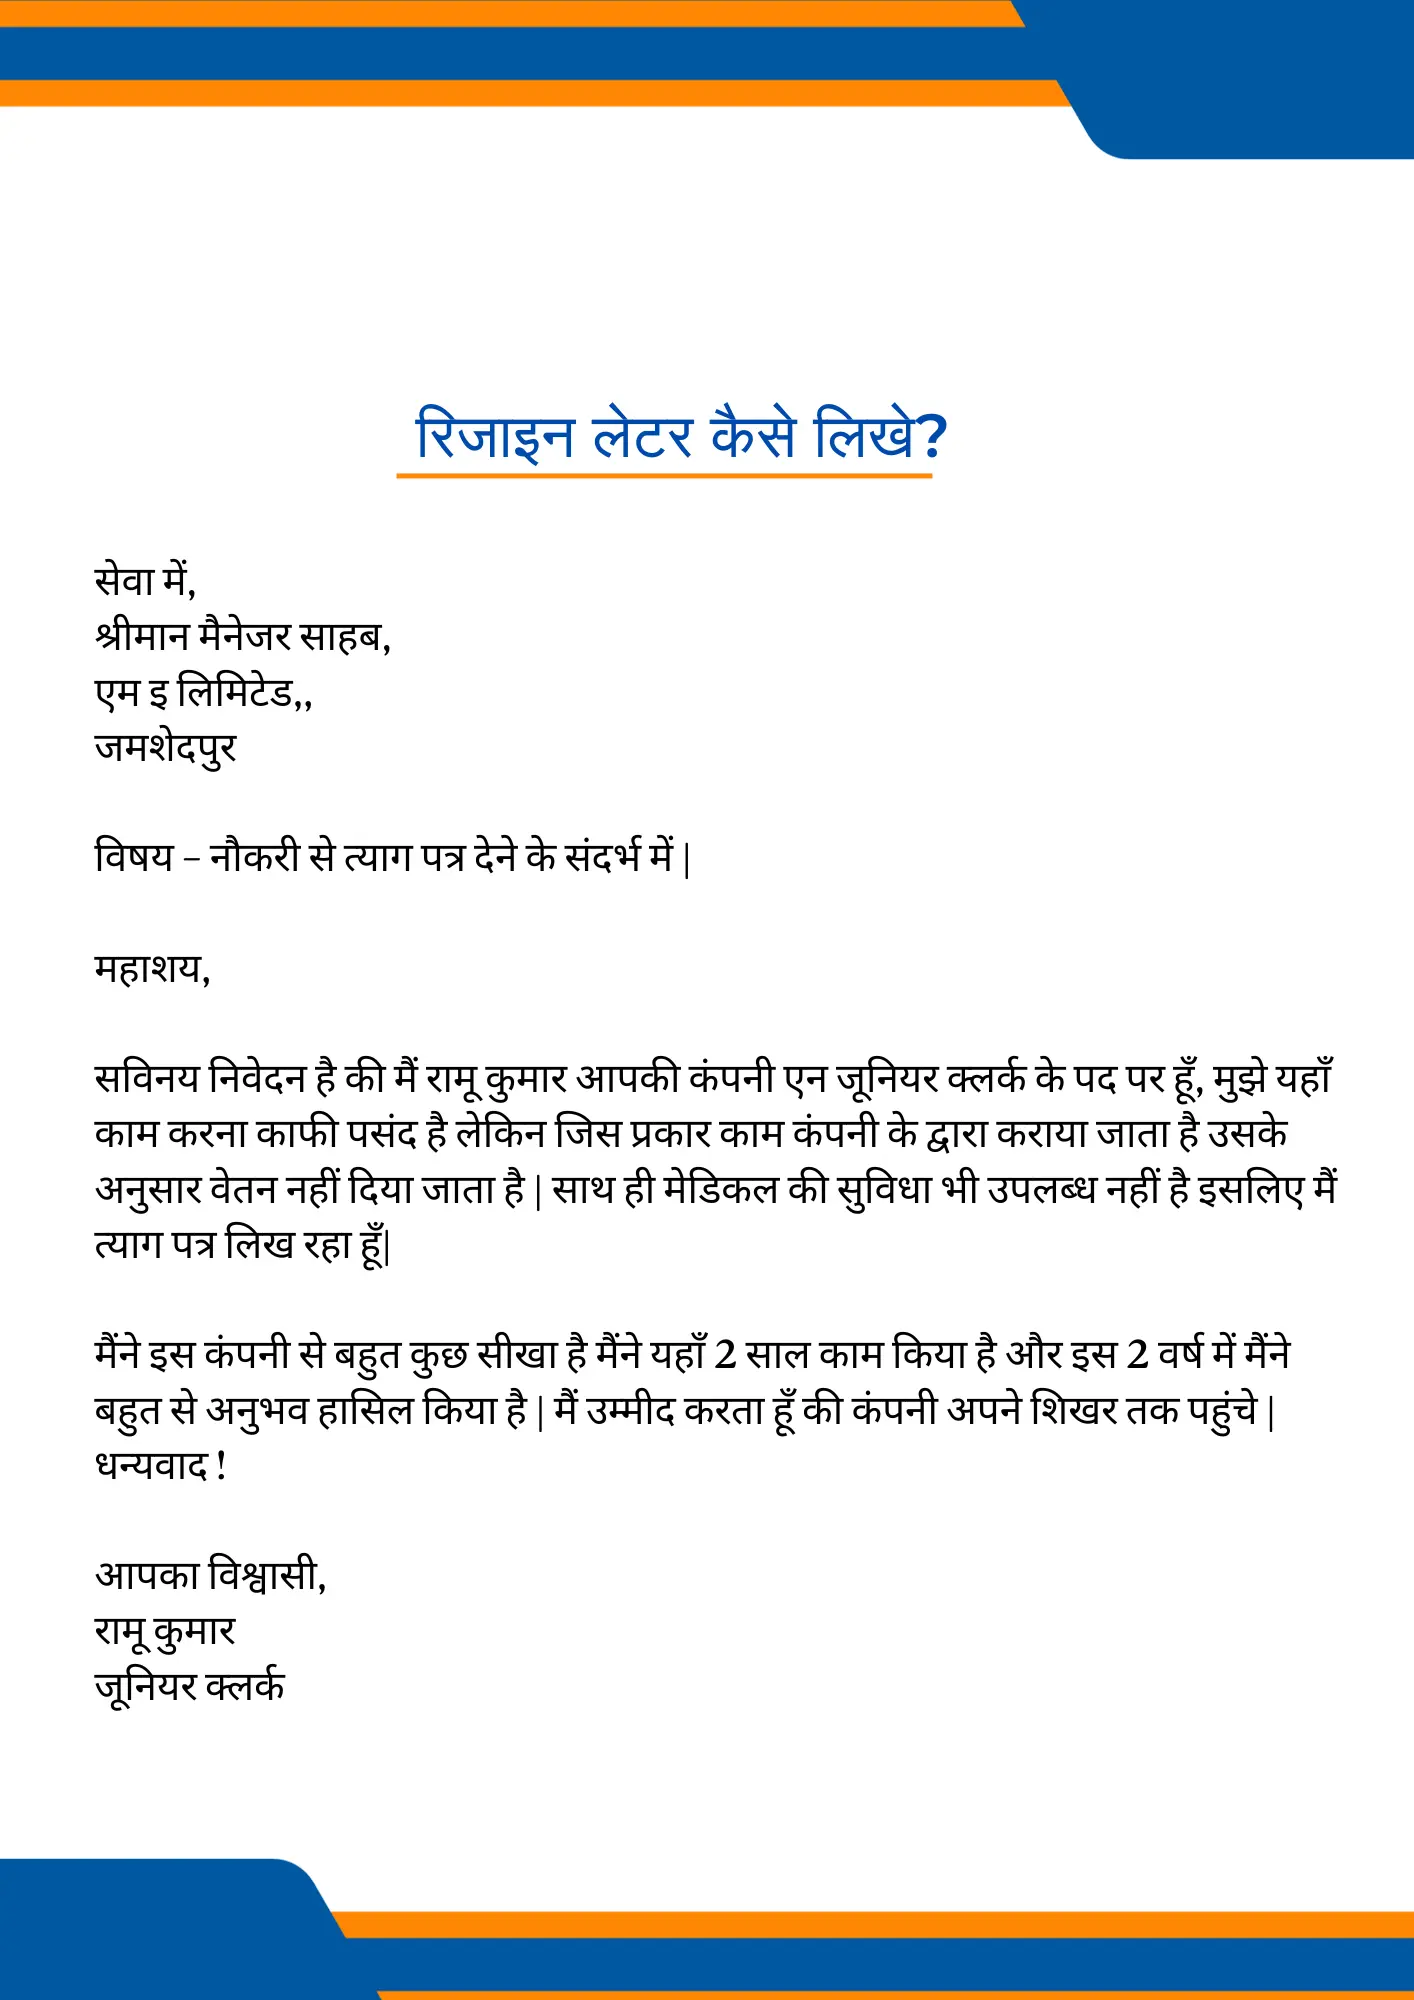 Resignation letter in Hindi रिजाइन लेटर कैसे लिखे